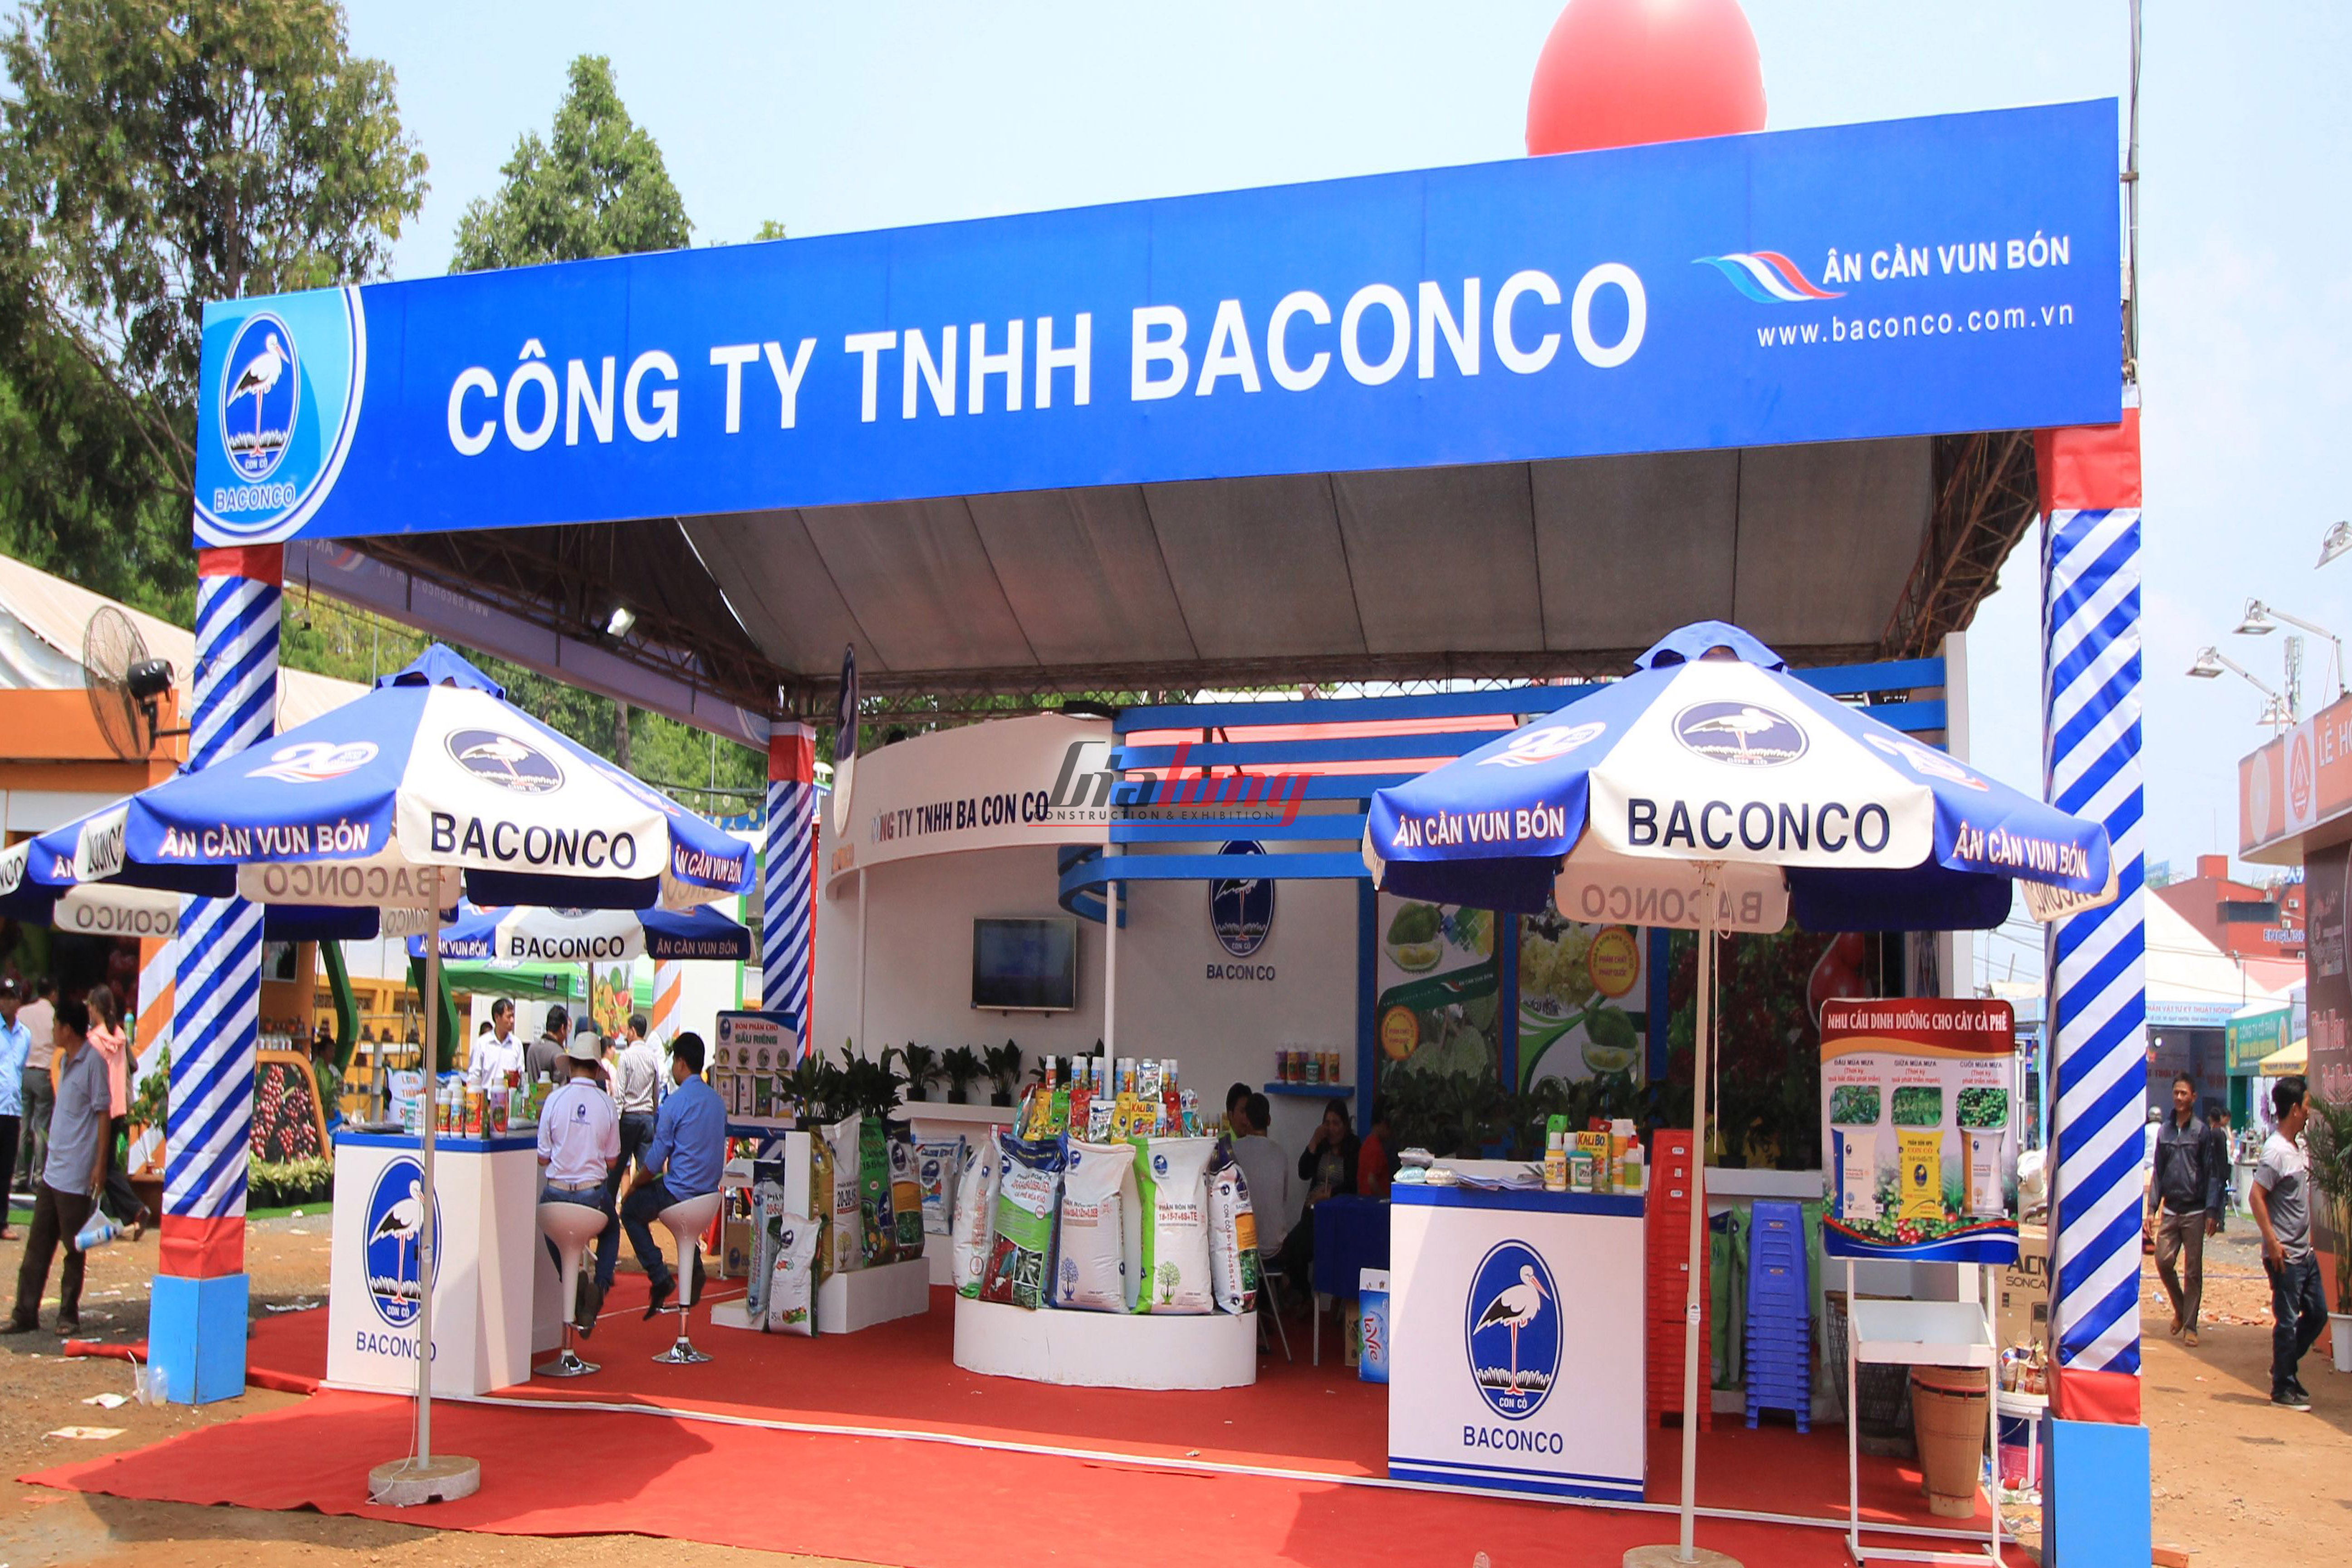 Baconco - Thi công hội chợ Cà phê Buôn Ma Thuột - Construction of Buon Ma Thuot Coffee fair booth